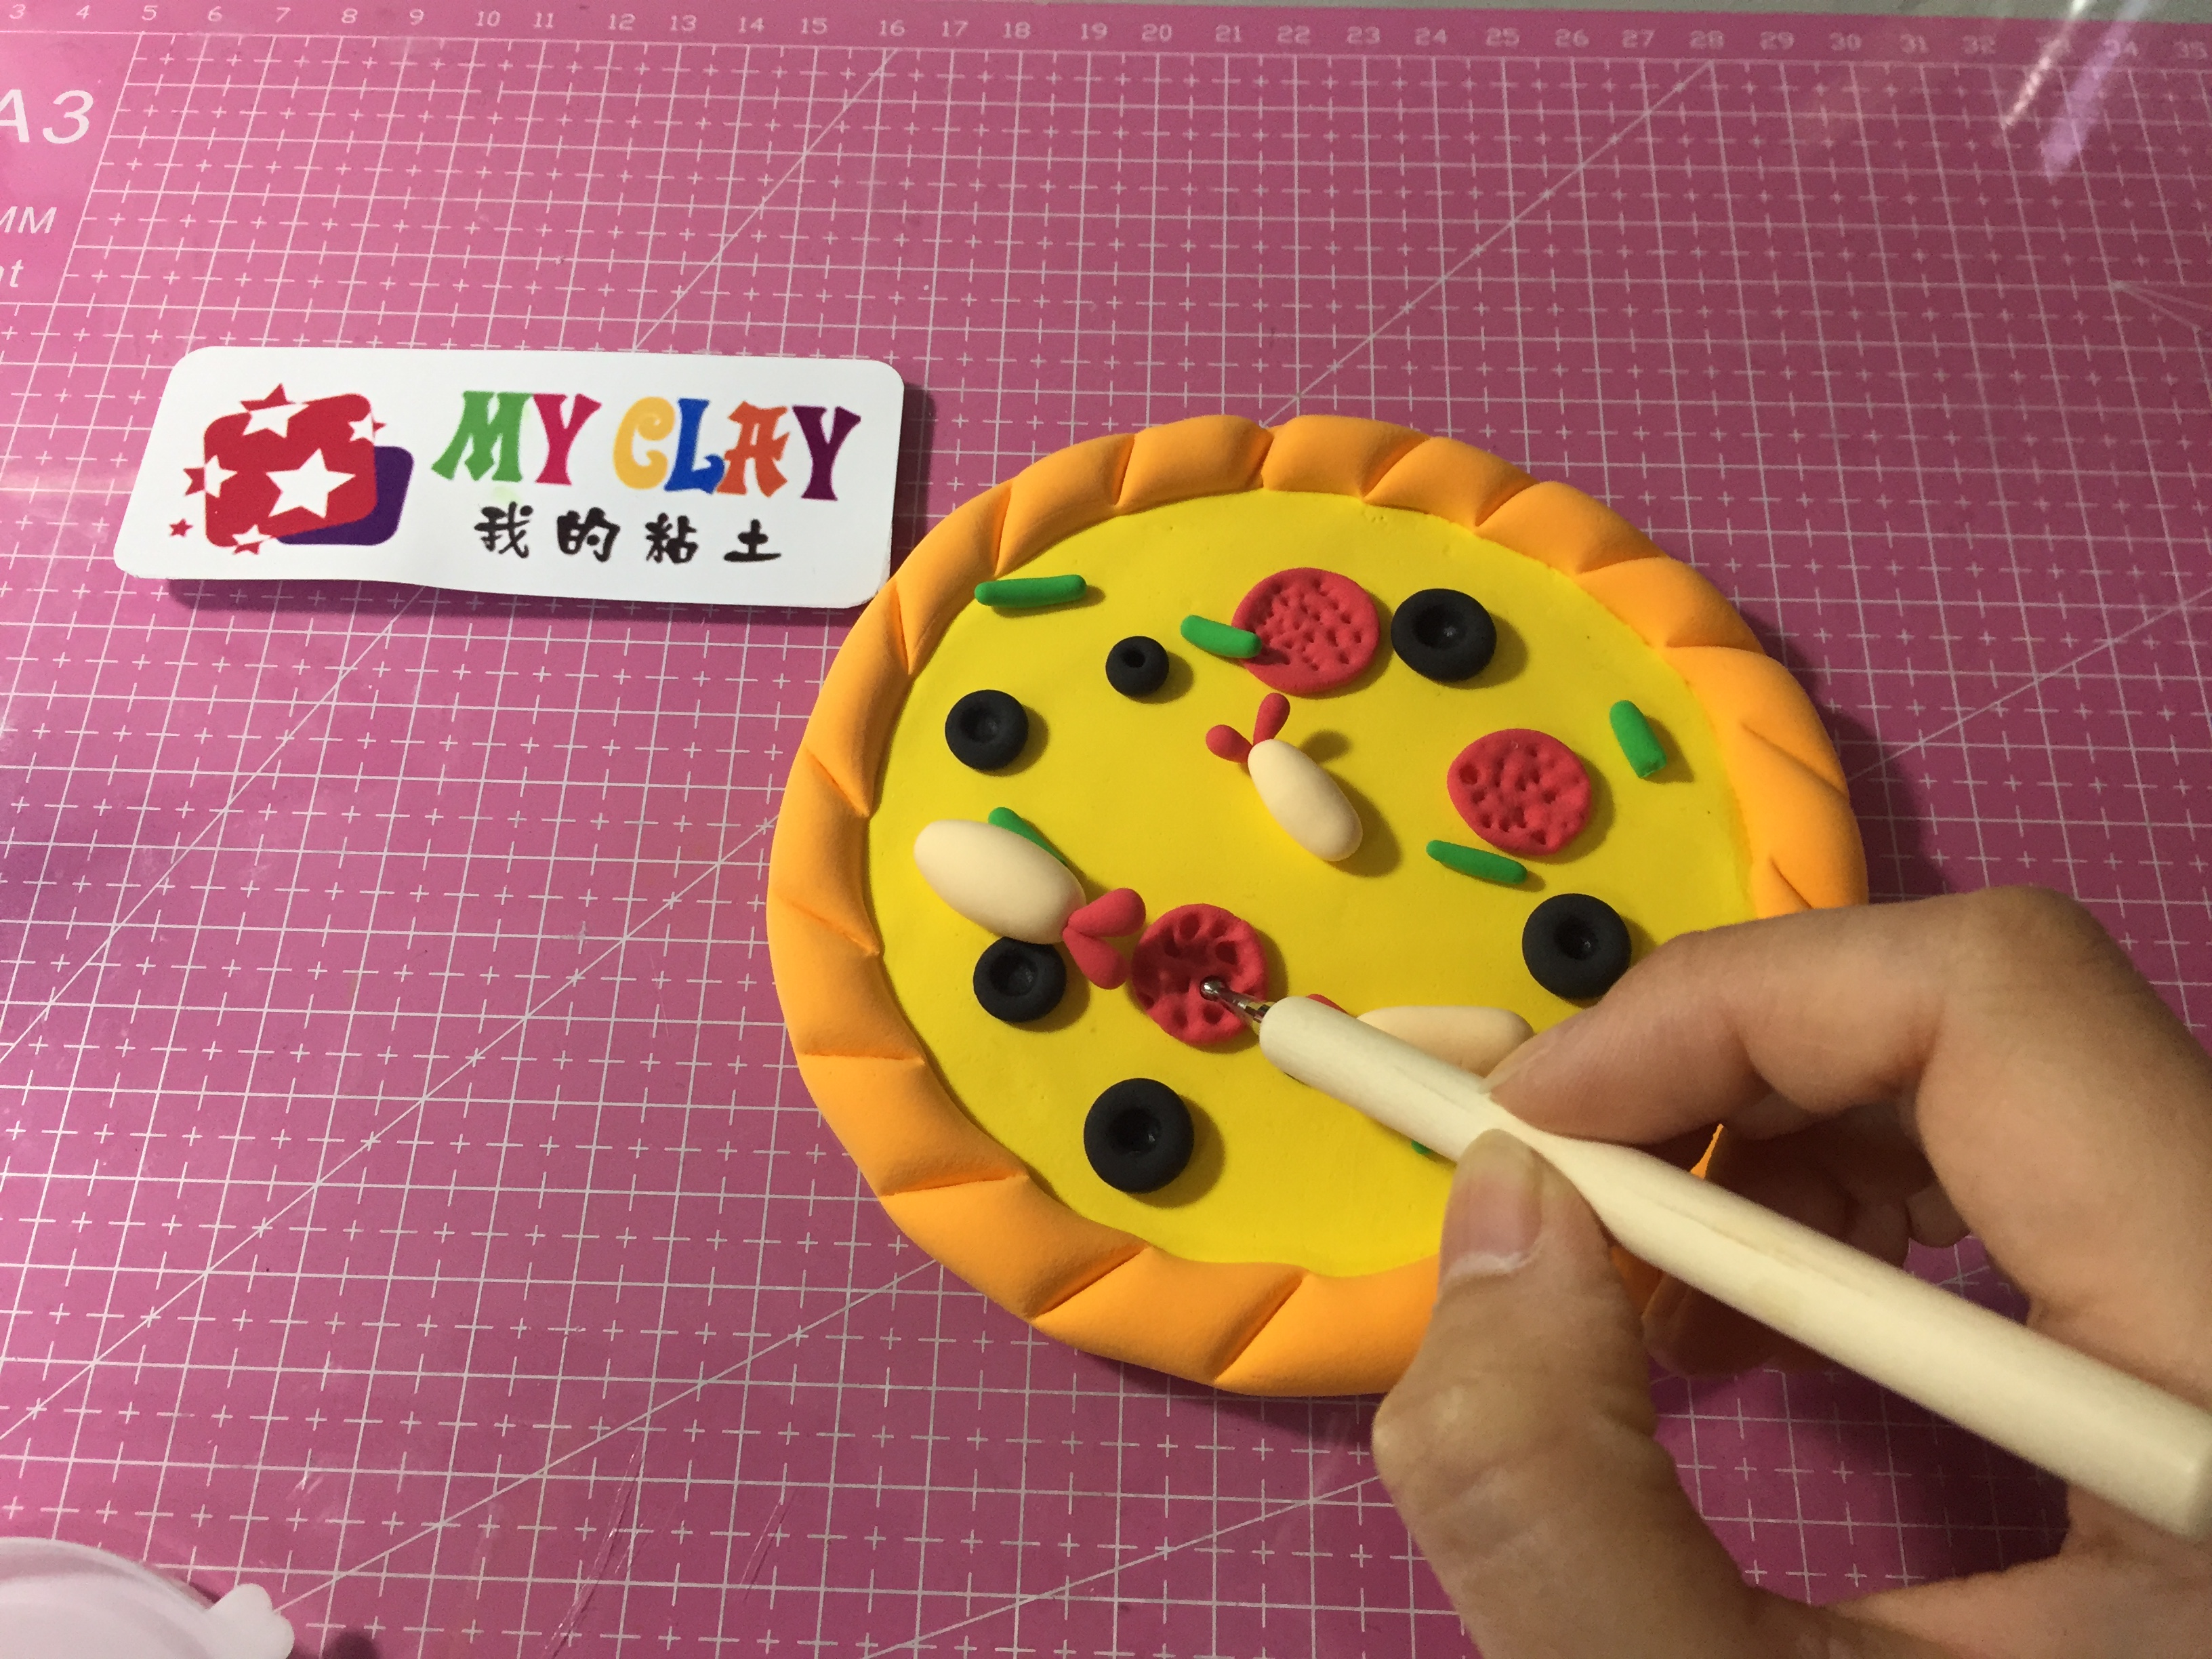 myclay我的粘土培训班幼儿幼师课程披萨制作